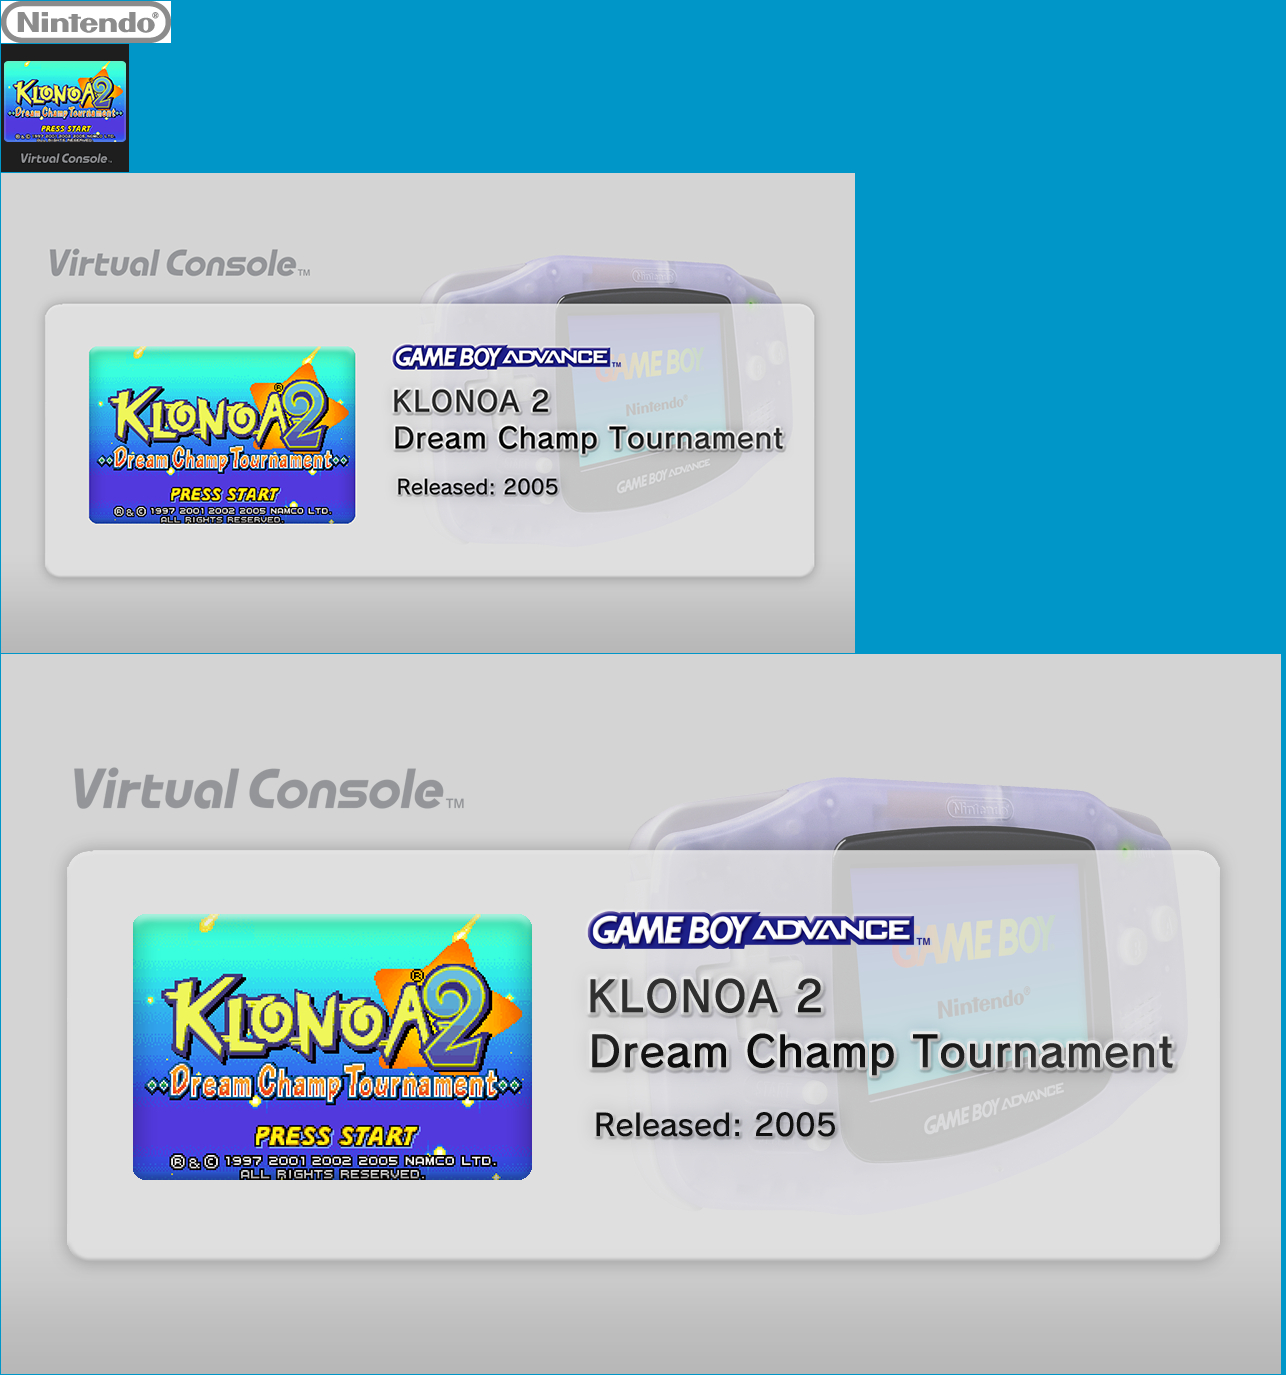 Virtual Console - KLONOA 2 Dream Champ Tournament